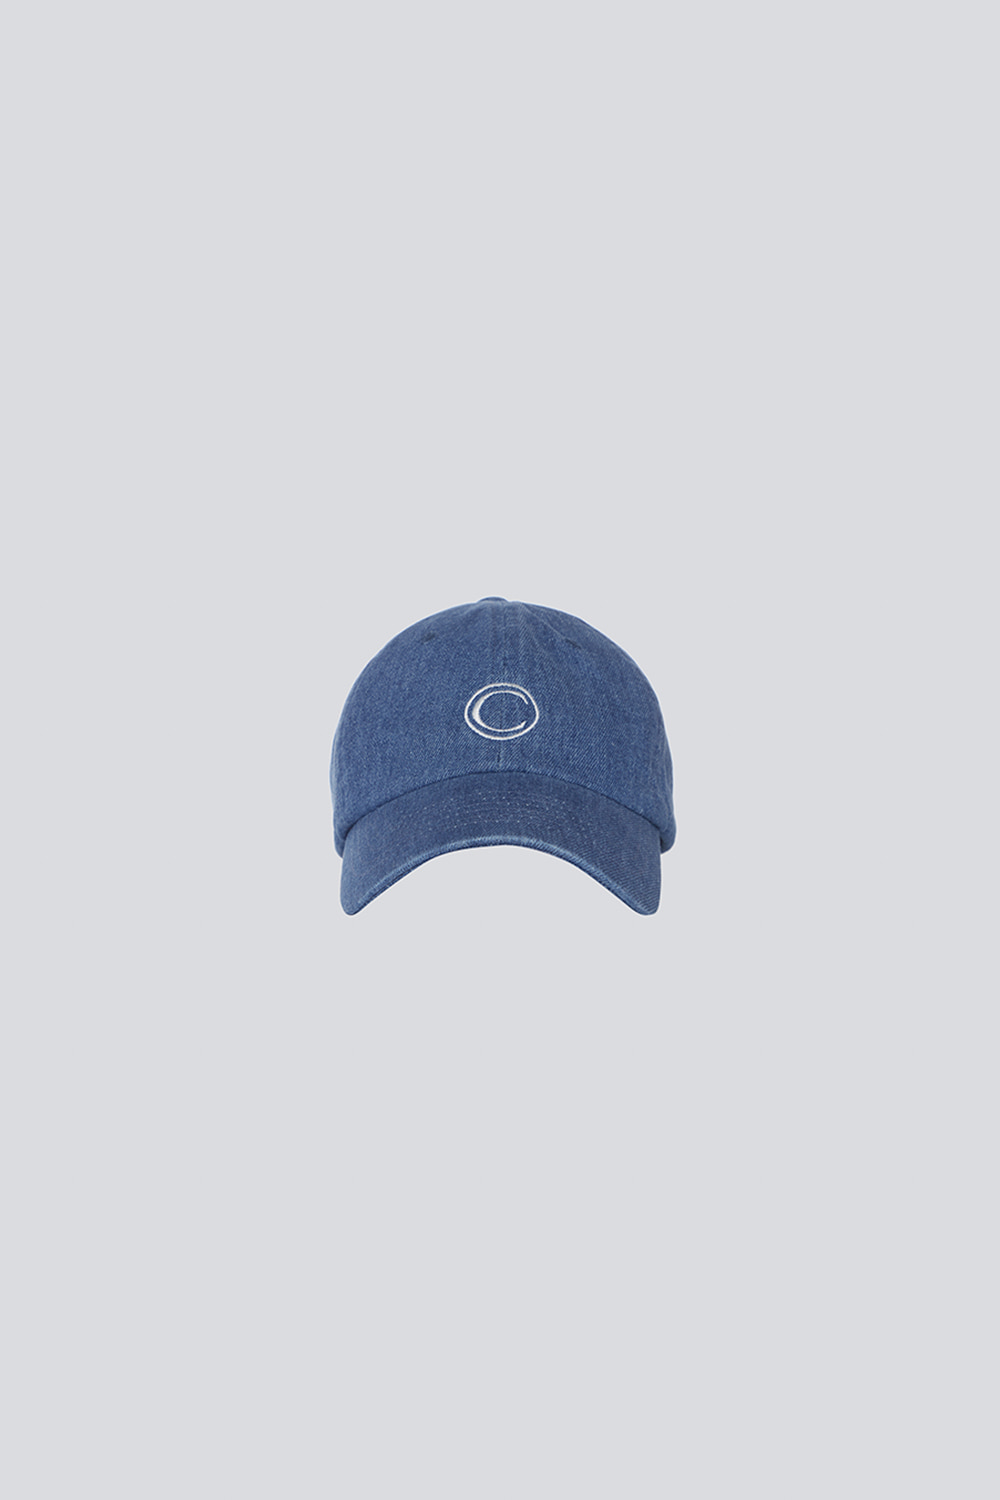 C-Logo cap(denim)_blue